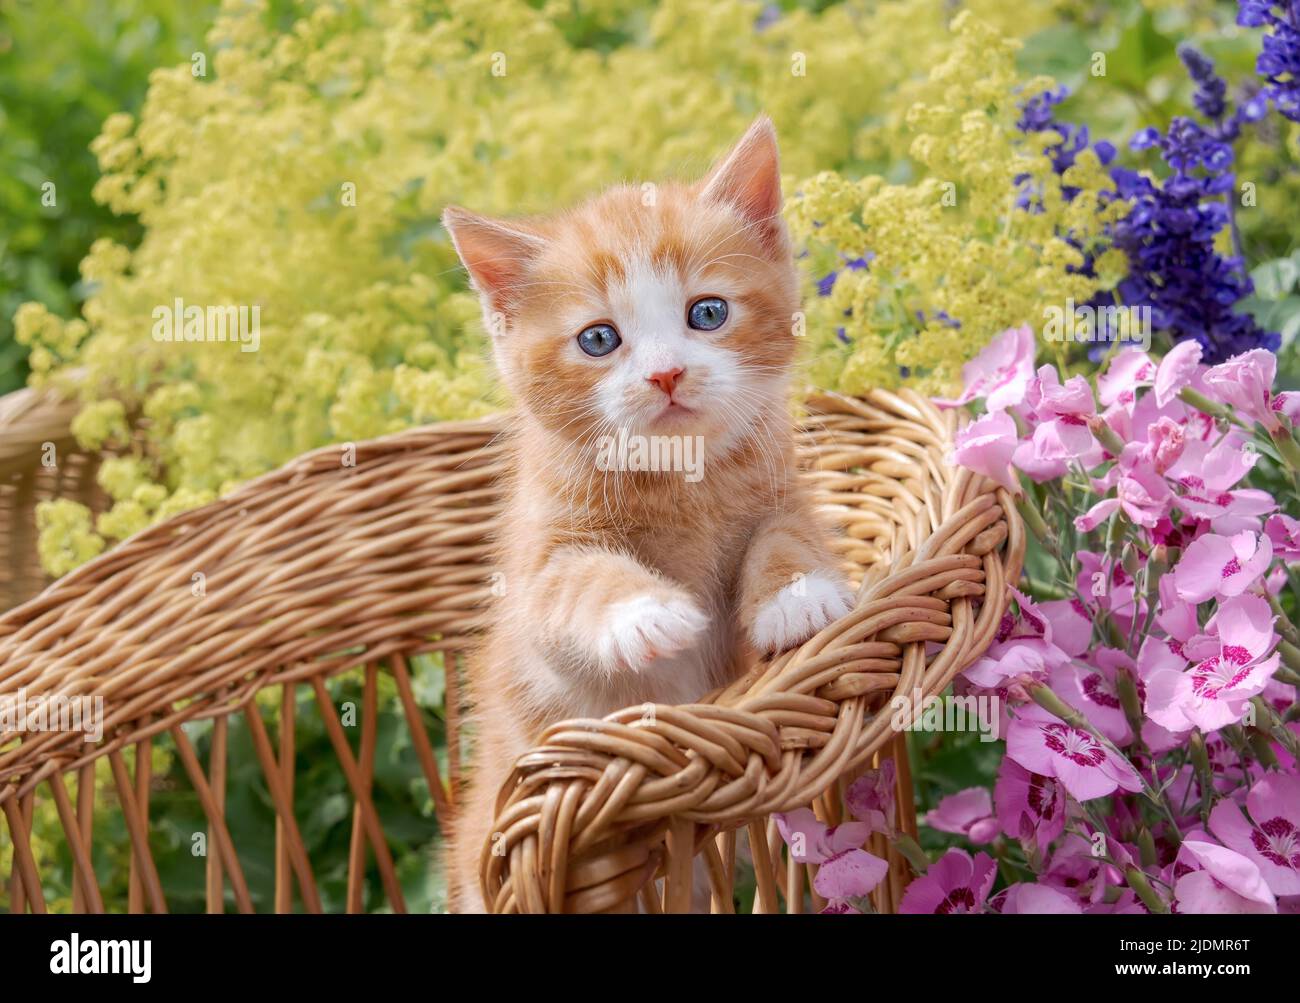 Carino gattino rosso-tabby-bianco del gatto con gli occhi blu bei che posano in una piccola sedia di vimini in un giardino fiorito colorato Foto Stock